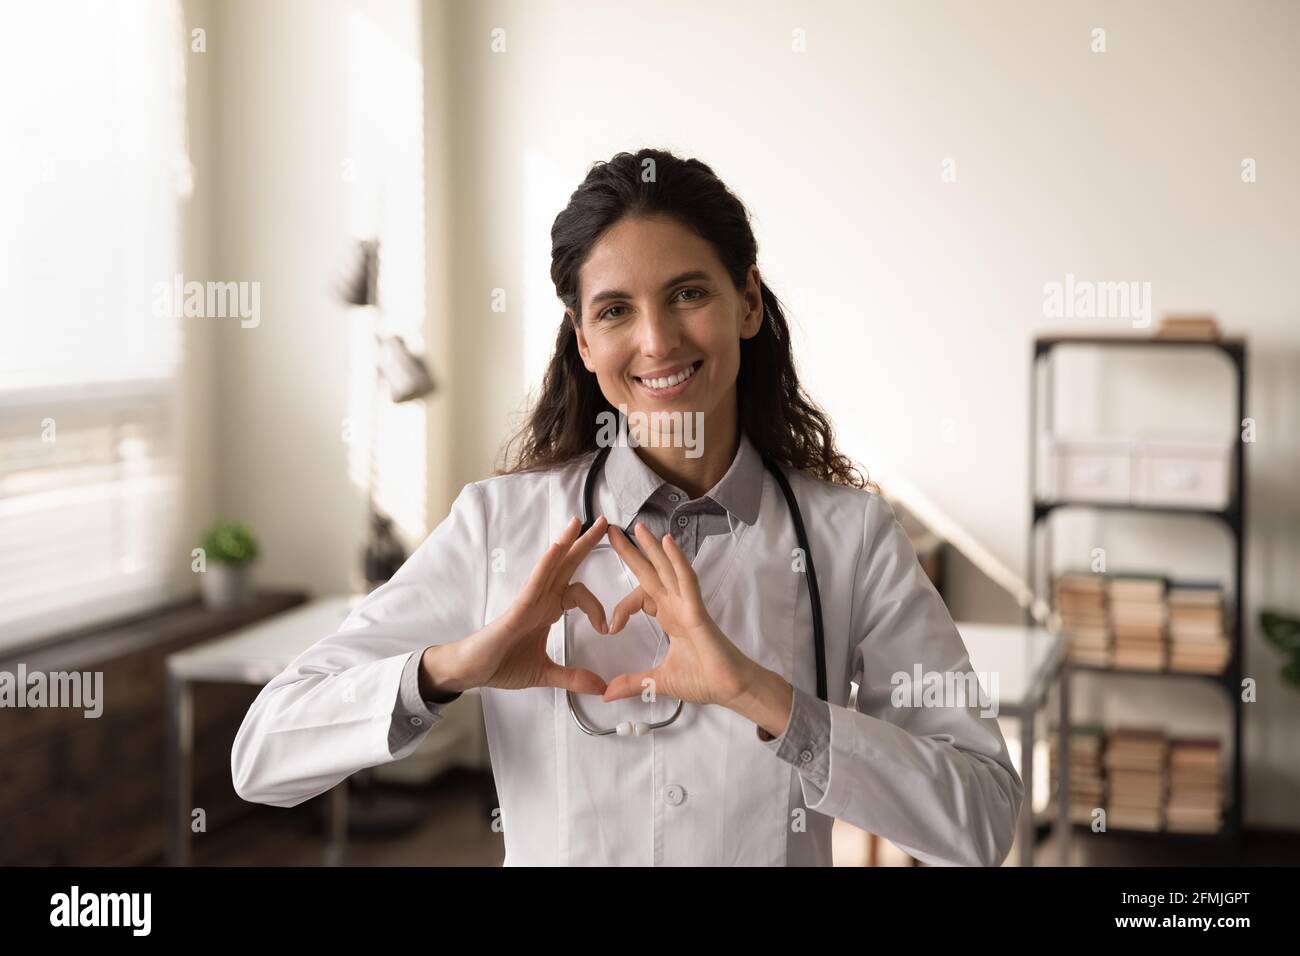 Lächelnde lateinische Kardiologin schaut auf die Kamera und zeigt das Fingerherz Stockfoto